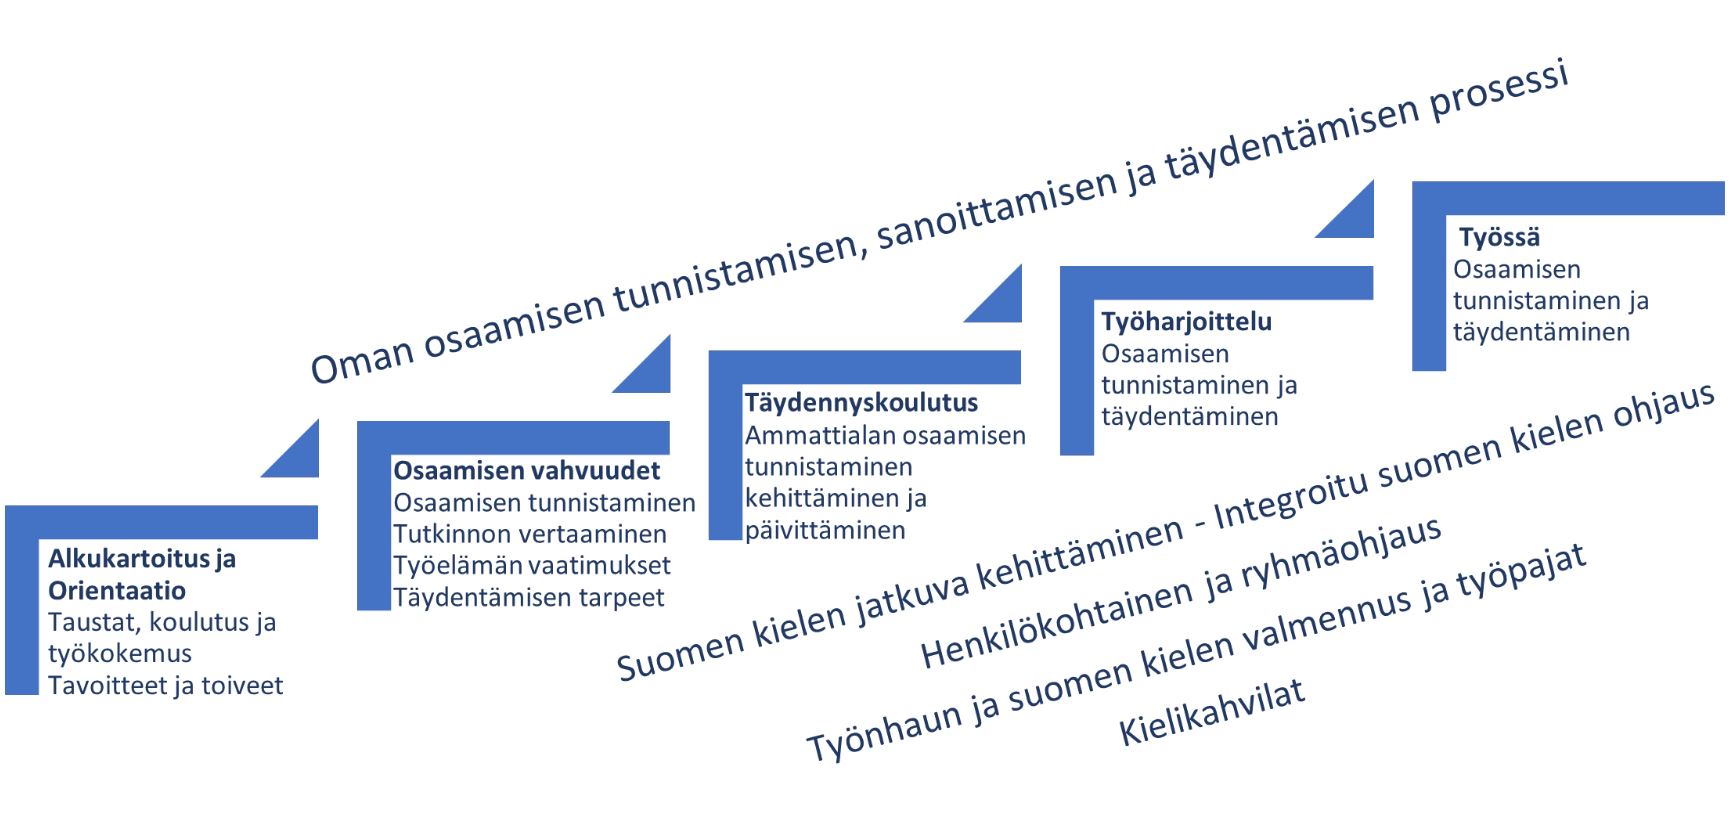 Kuviossa 1 on esitetty Suomen kielen integrointi SIMHE polun osaamisen tunnistamisen, sanoittamisen ja täydentämisen prosessissa. Mukana kulkevat koko prosessin ajan suomen kielen jatkuva oppiminen ja integroitu ohjaus, henkilökohtainen ja ryhmäohjaus, ty